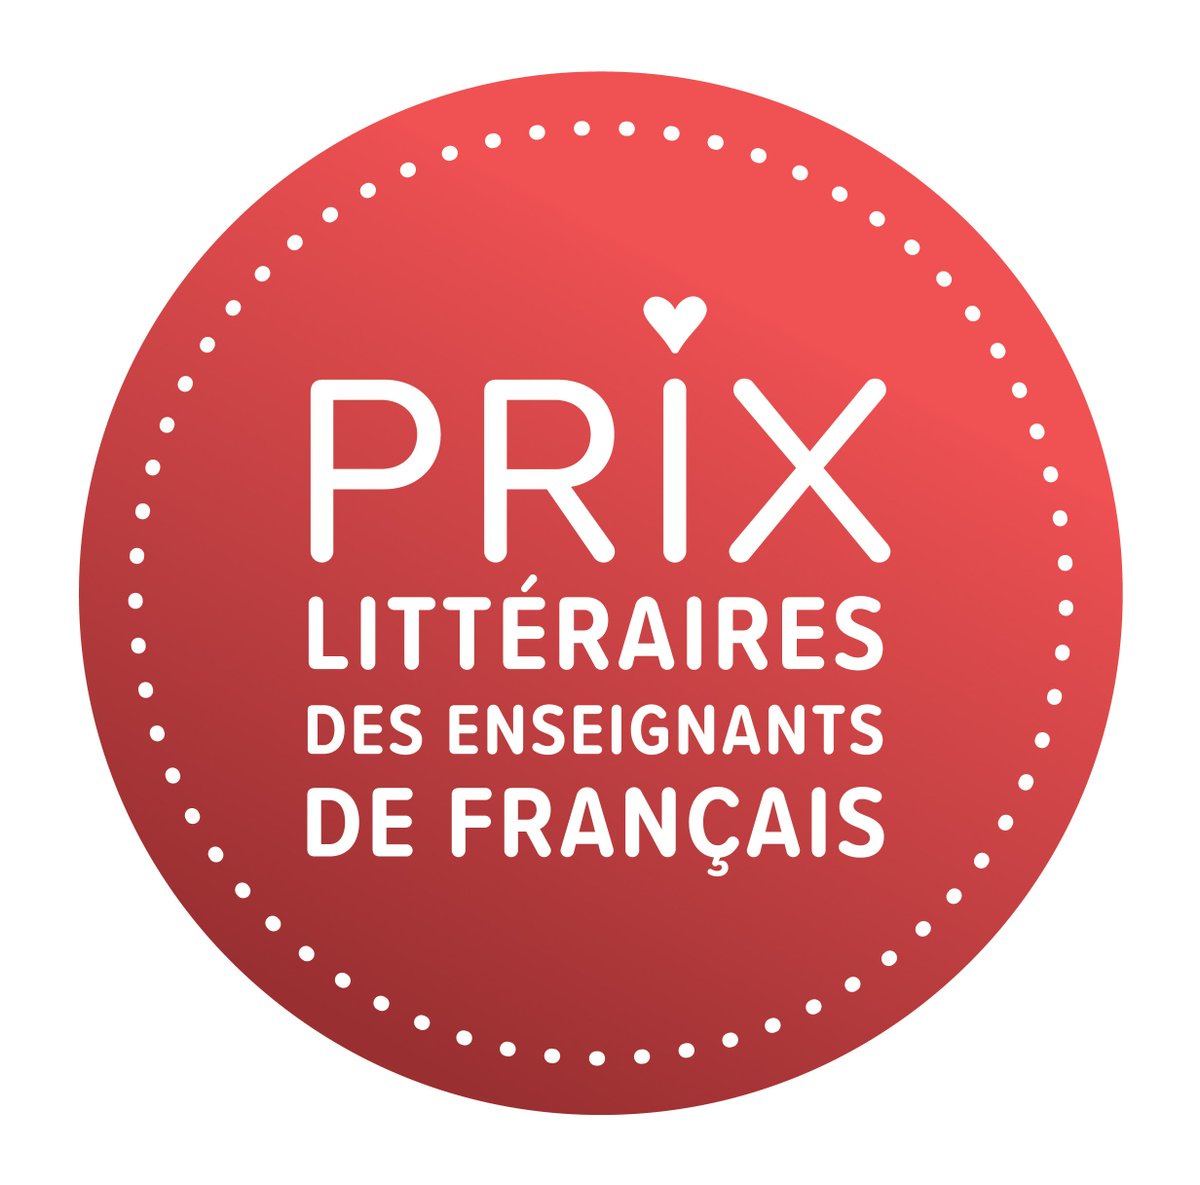 Les lauréats des Prix littéraires des enseignants de français, créés par l'AQPF et l’ANEL, seront annoncés le mercredi 31 octobre à 17 h 30 à la Maison de la littérature, 40 rue Saint-Stanislas, à Québec, en ouverture du congrès de l’AQPF.: anel.qc.ca/anel/remise-de…